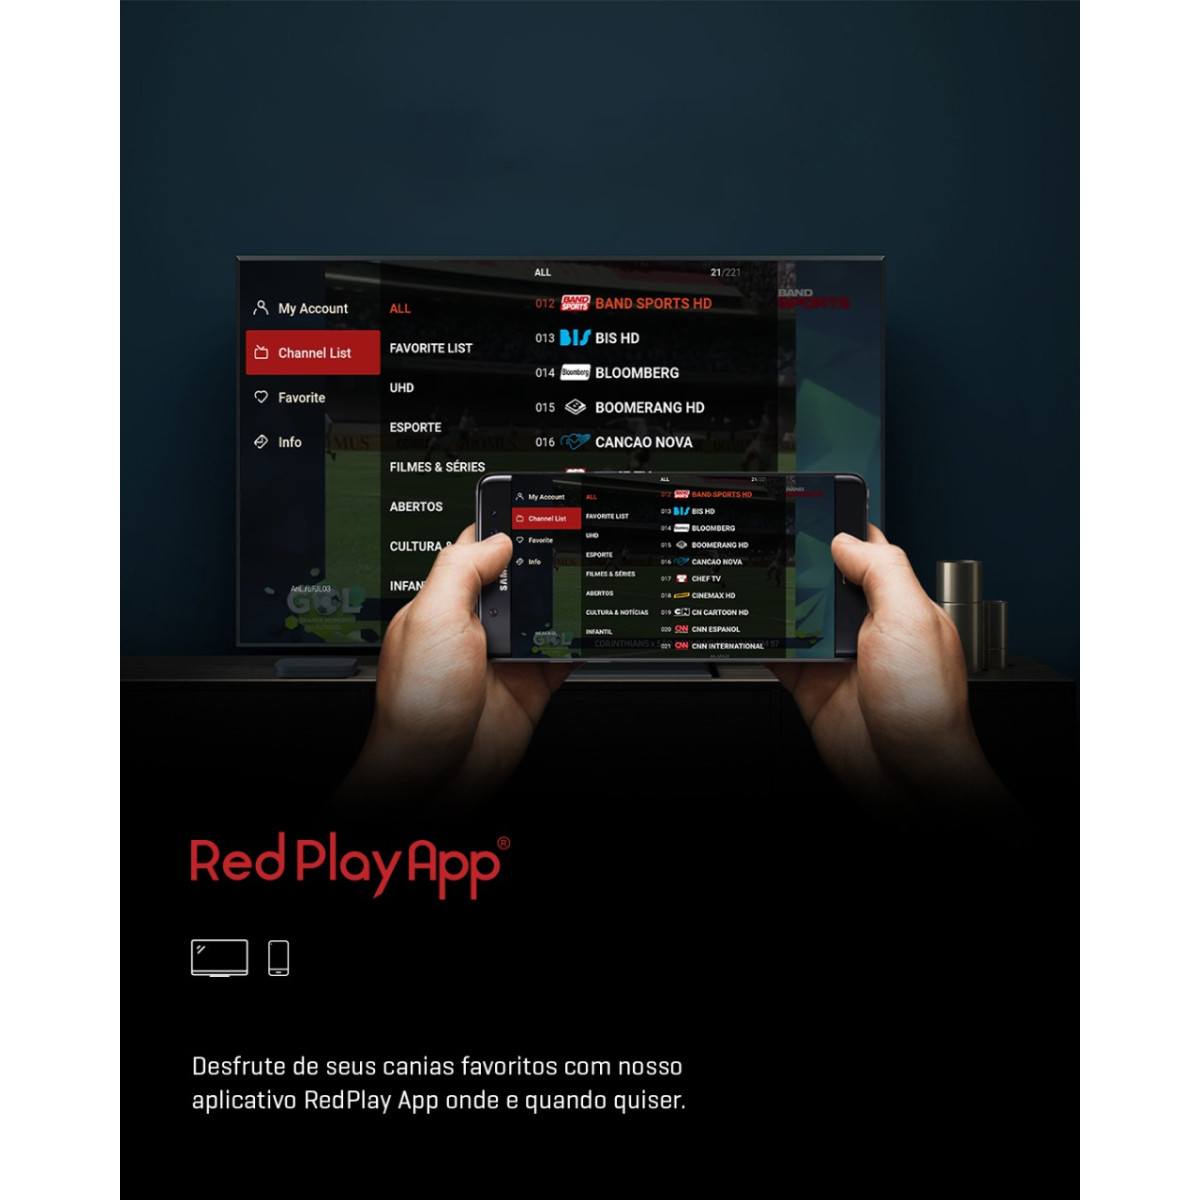 Receptor RedPlay Redstick Ultra HD 4K